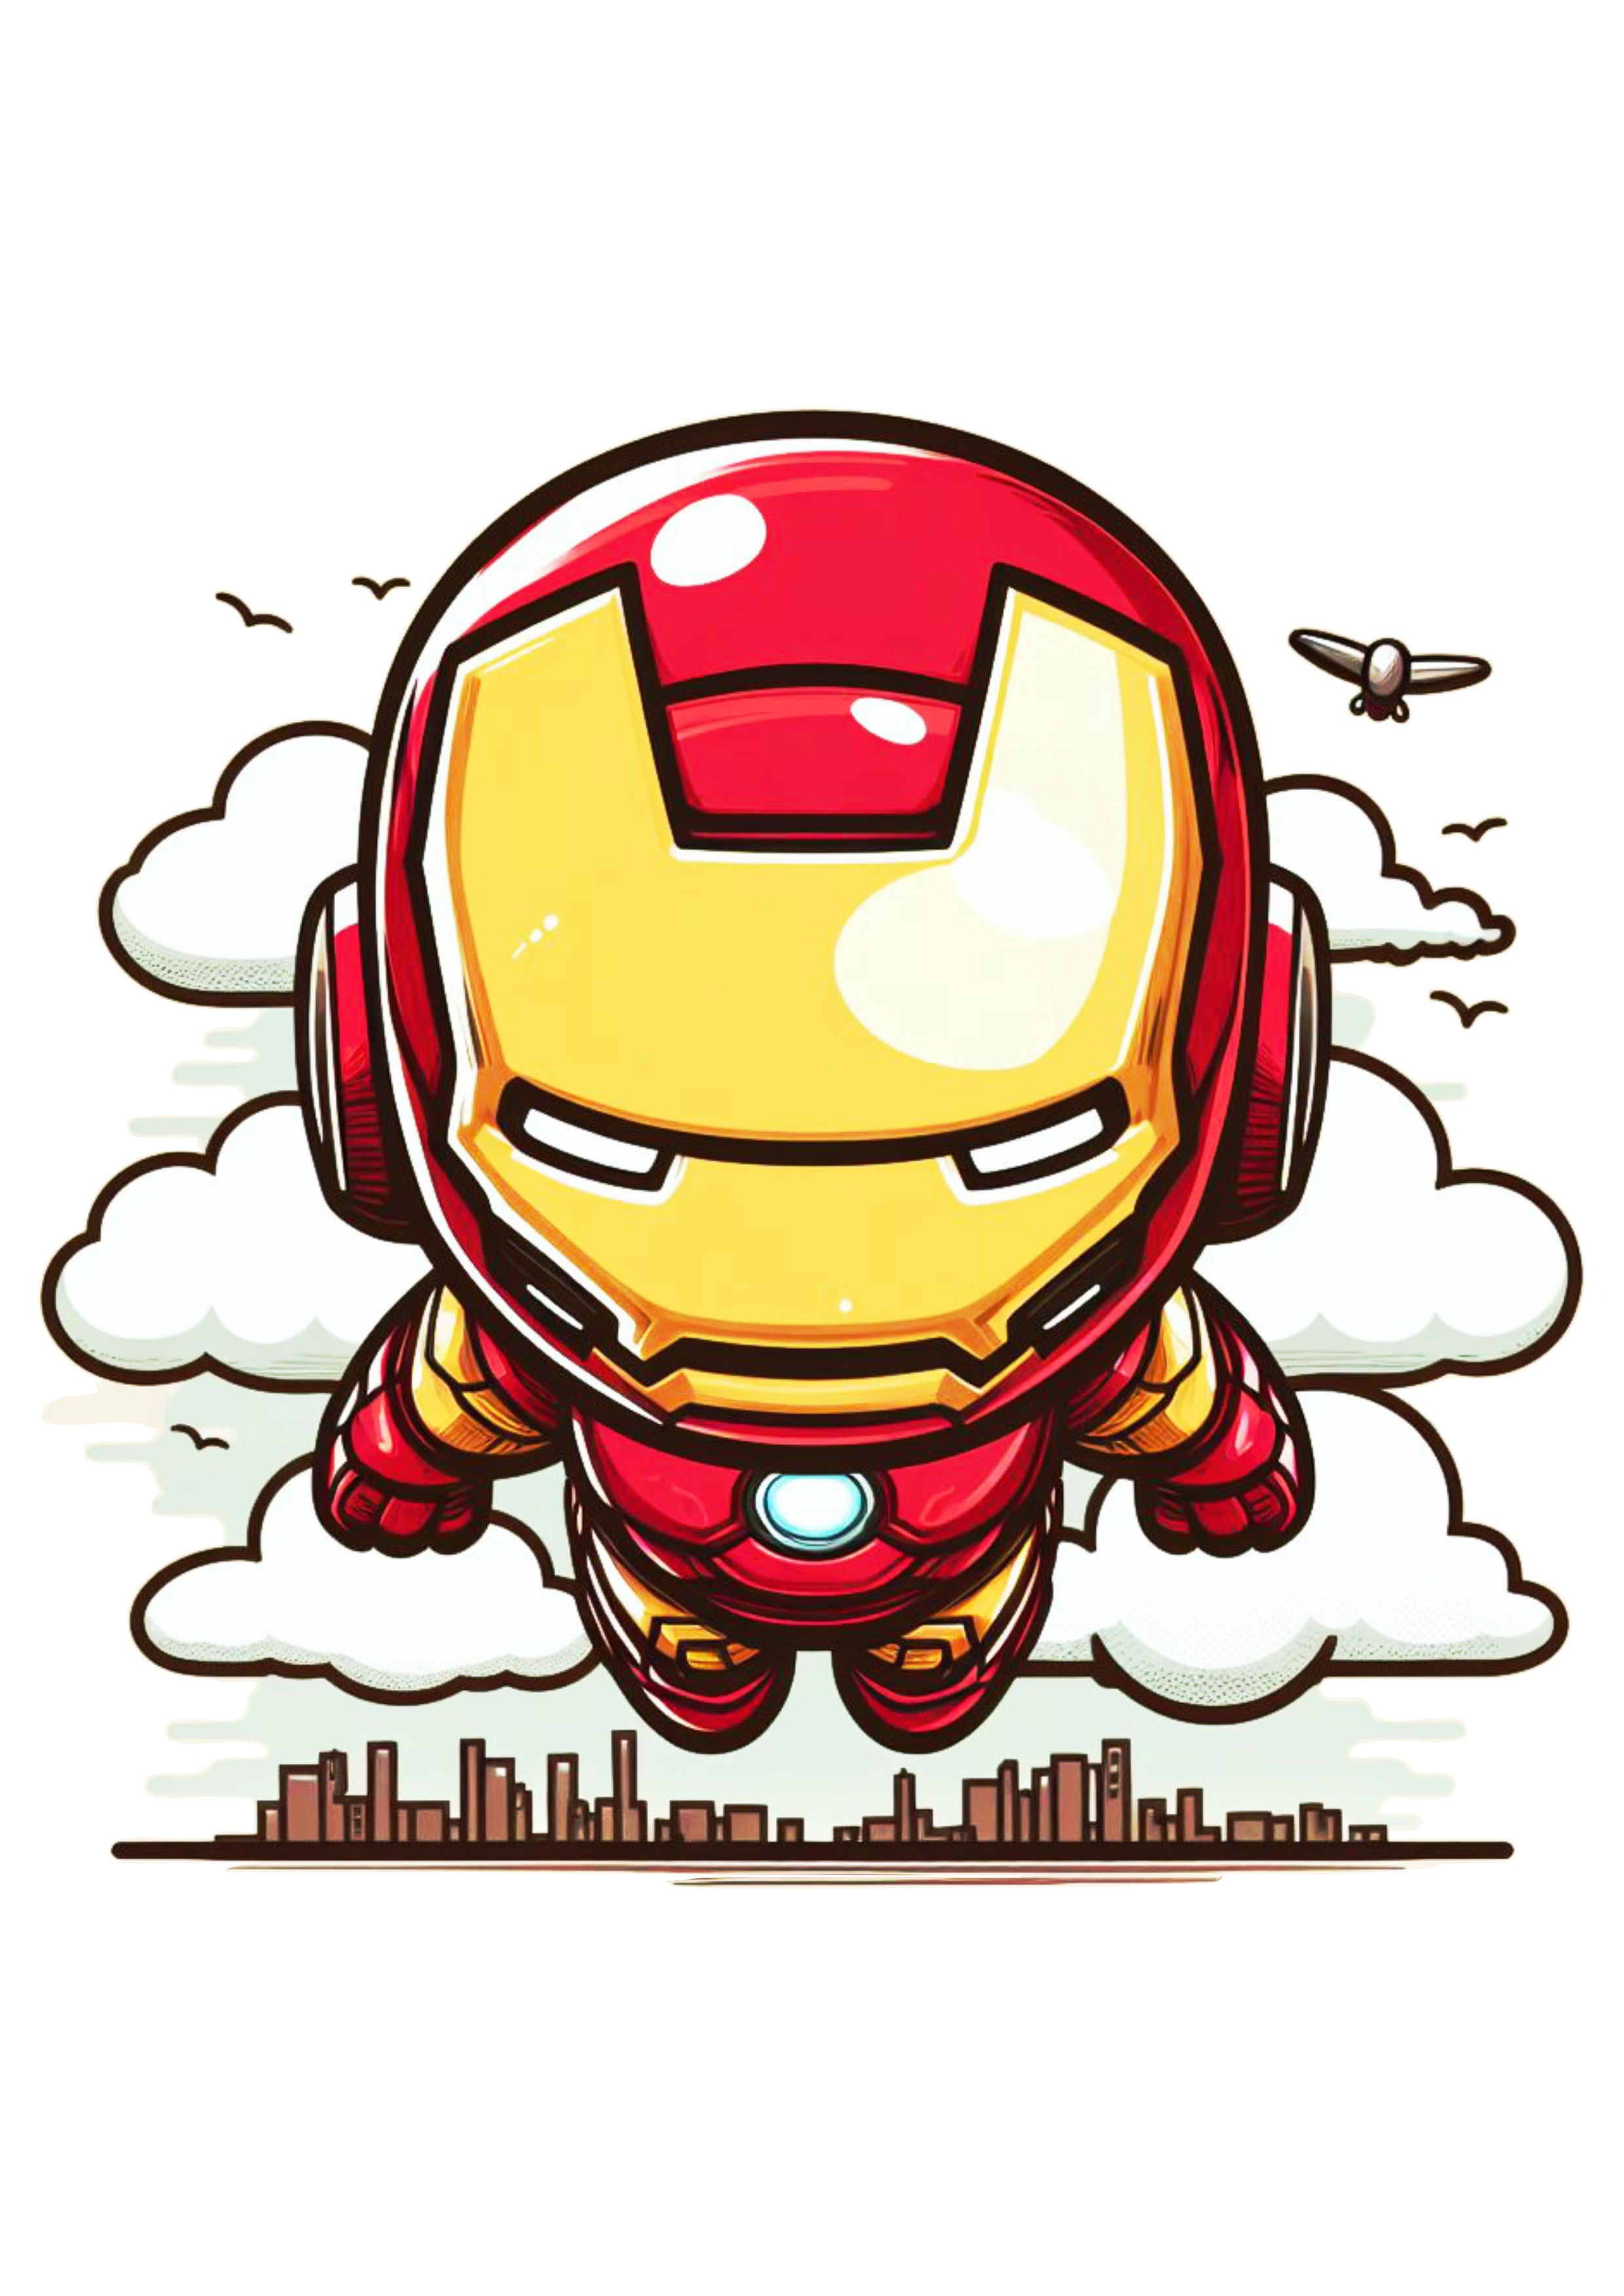 Homem de ferro voando bonequinho fofinho cute chibi marvel comics HQ de super herói fundo transparente png